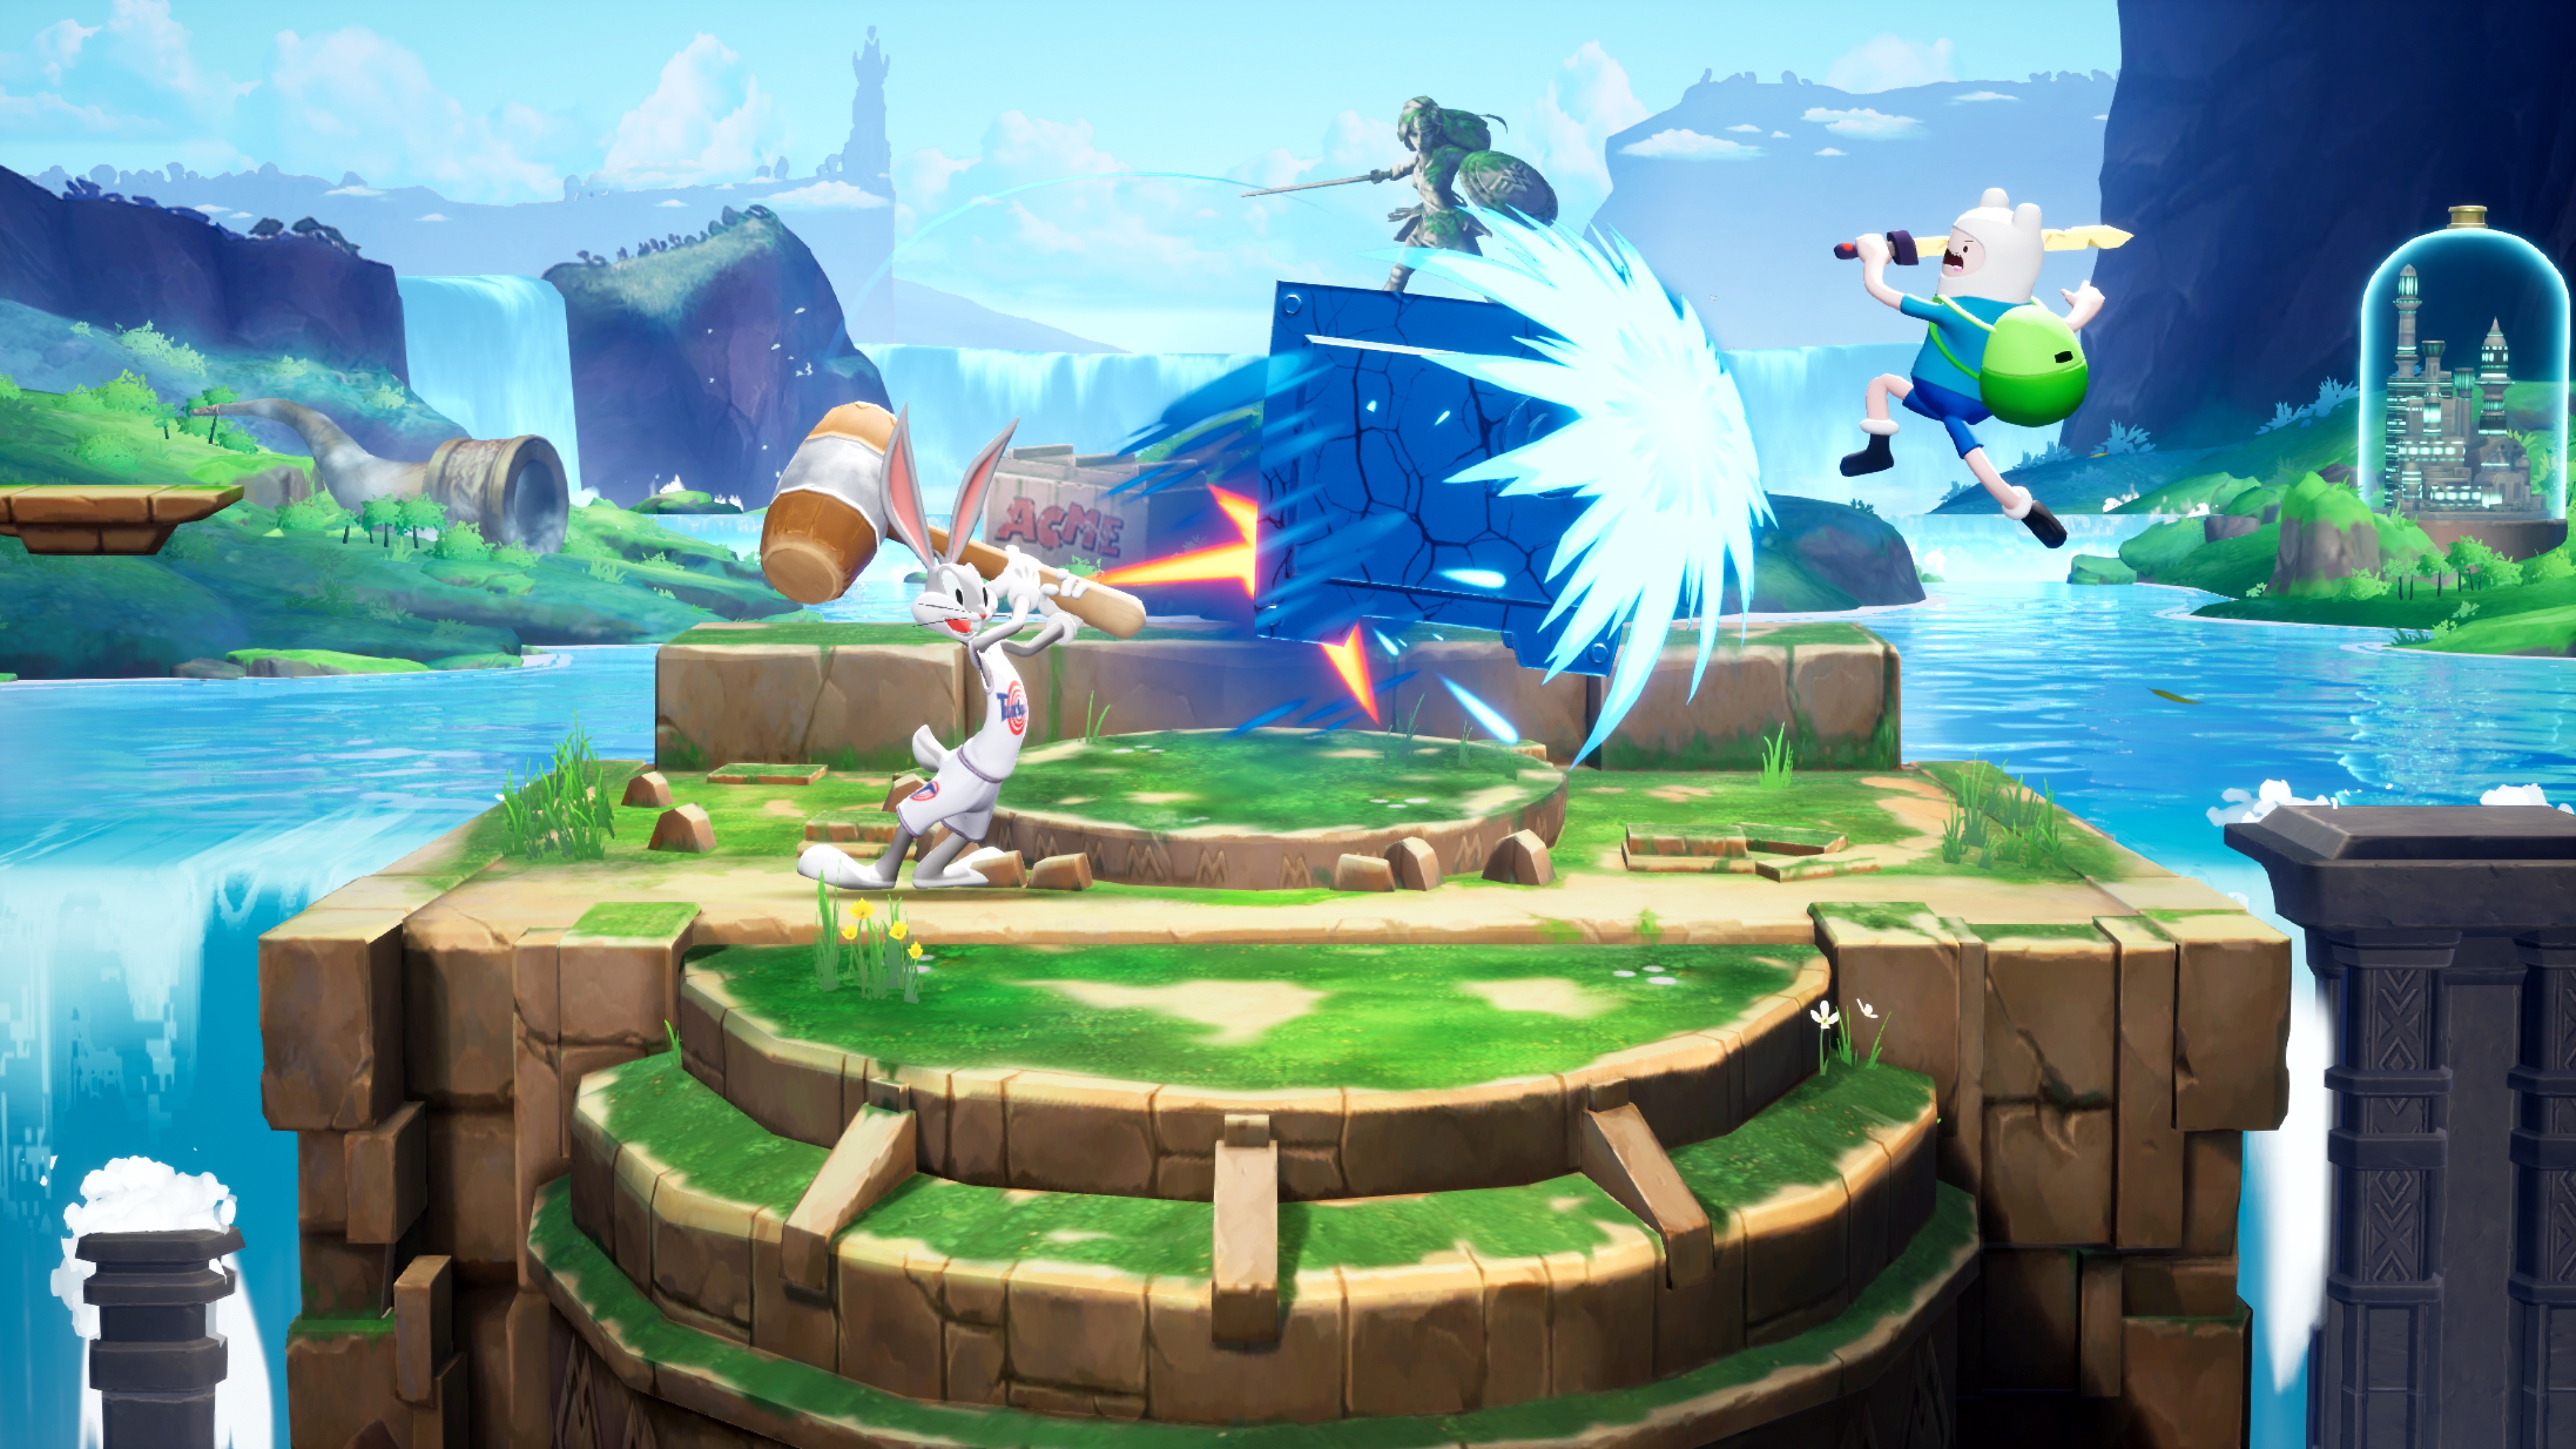 لقطة شاشة للعبة MultiVersus تعرض معركة بين Bugs Bunny و Finn the Human